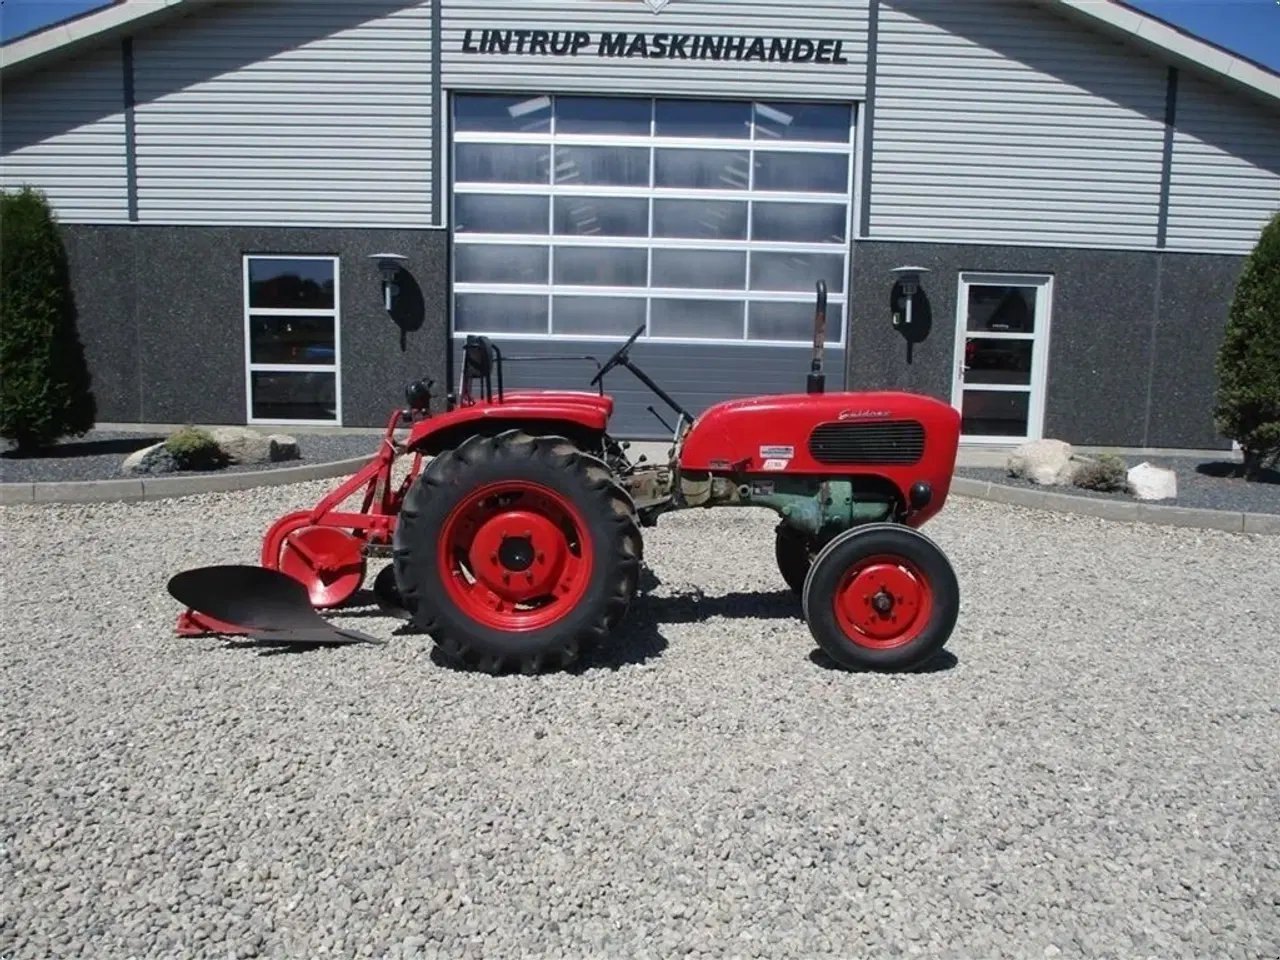 Billede 1 - - - - Komplet sæt med traktor og Plov. Güldner 17 HK traktor og 1furet Langeskov plov. Prisen for sættet komplet.